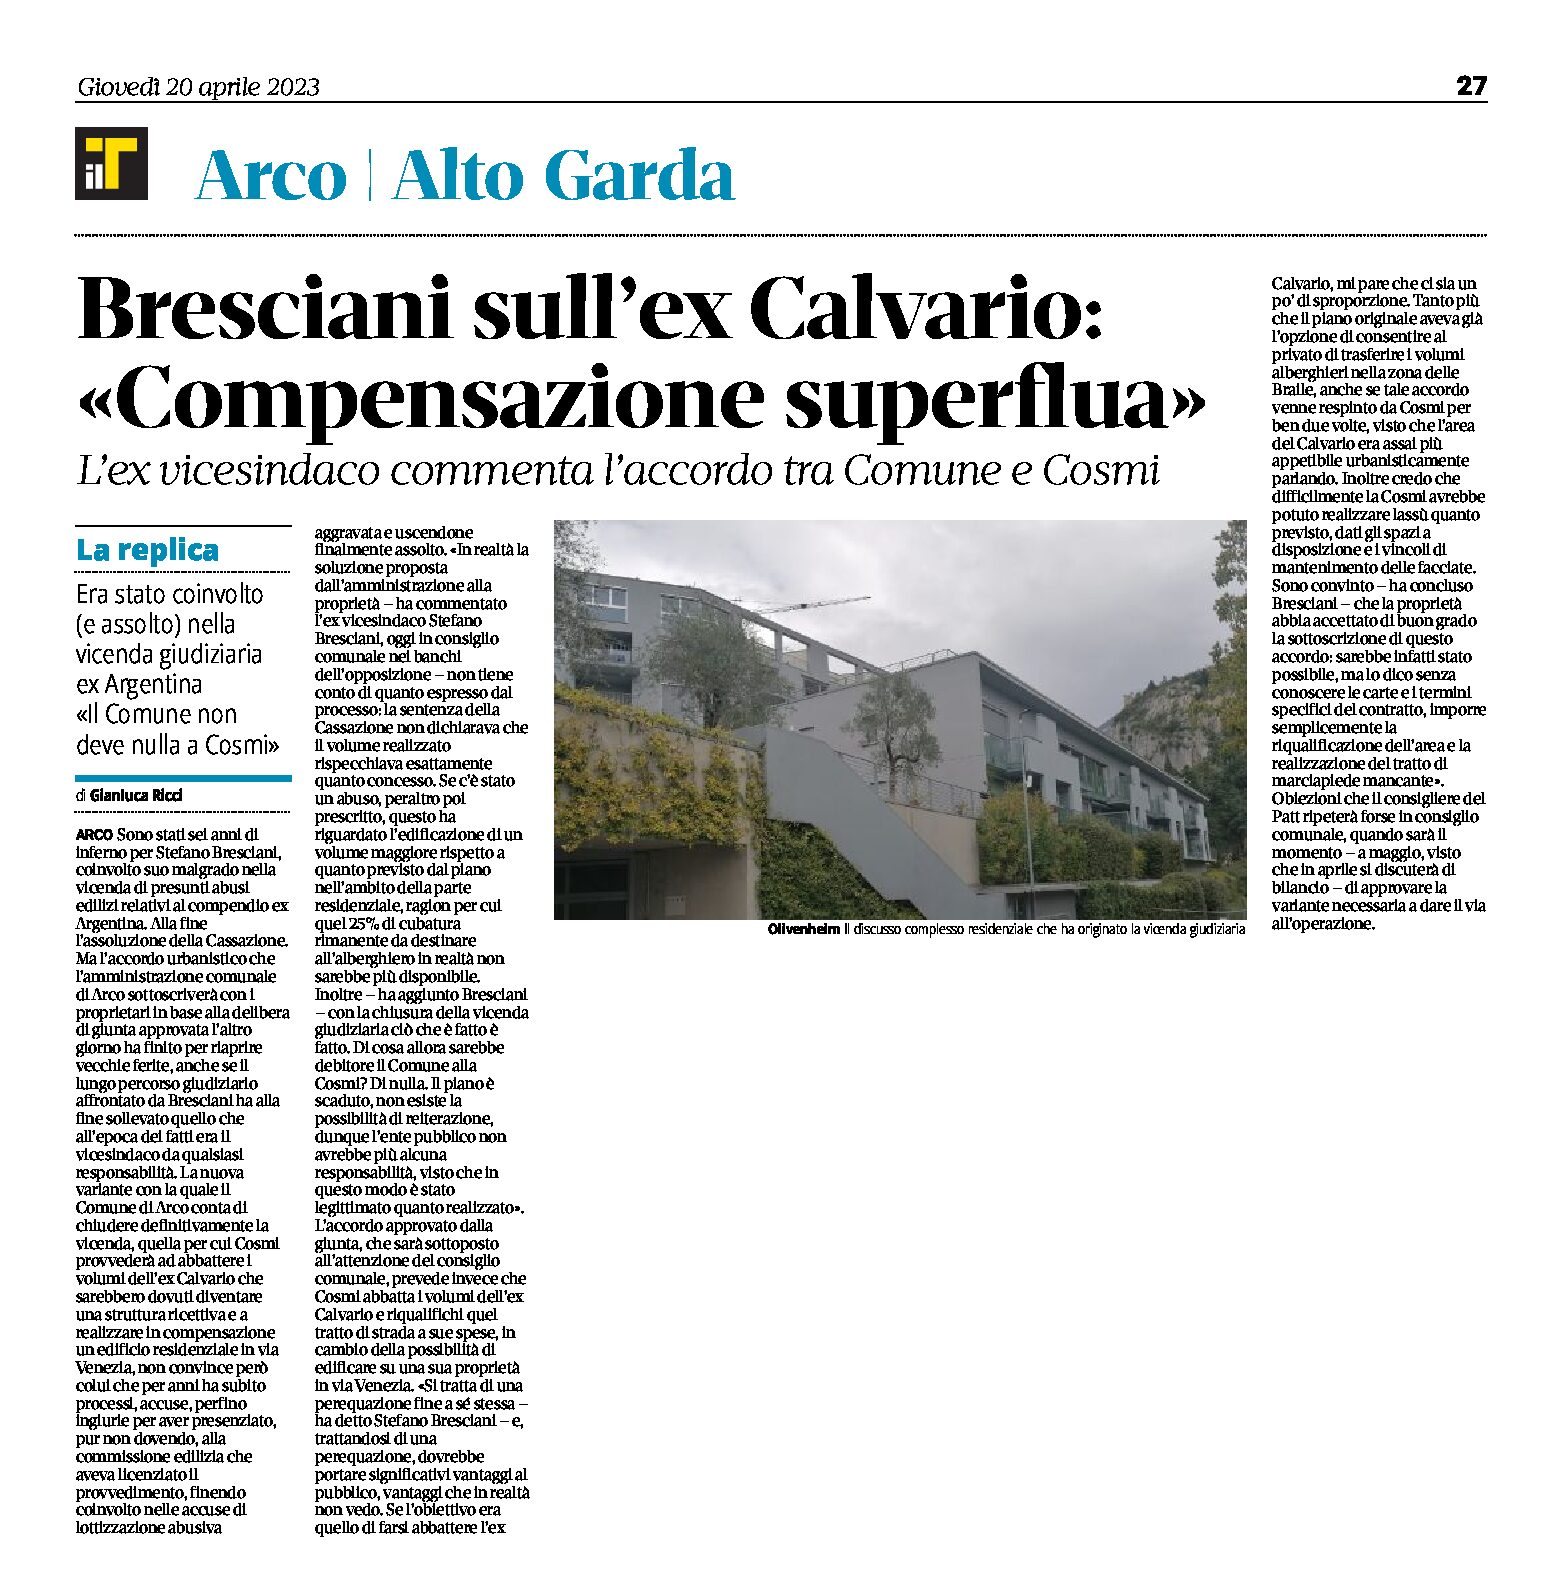 Arco, ex Calvario: Bresciani “compensazione superflua”